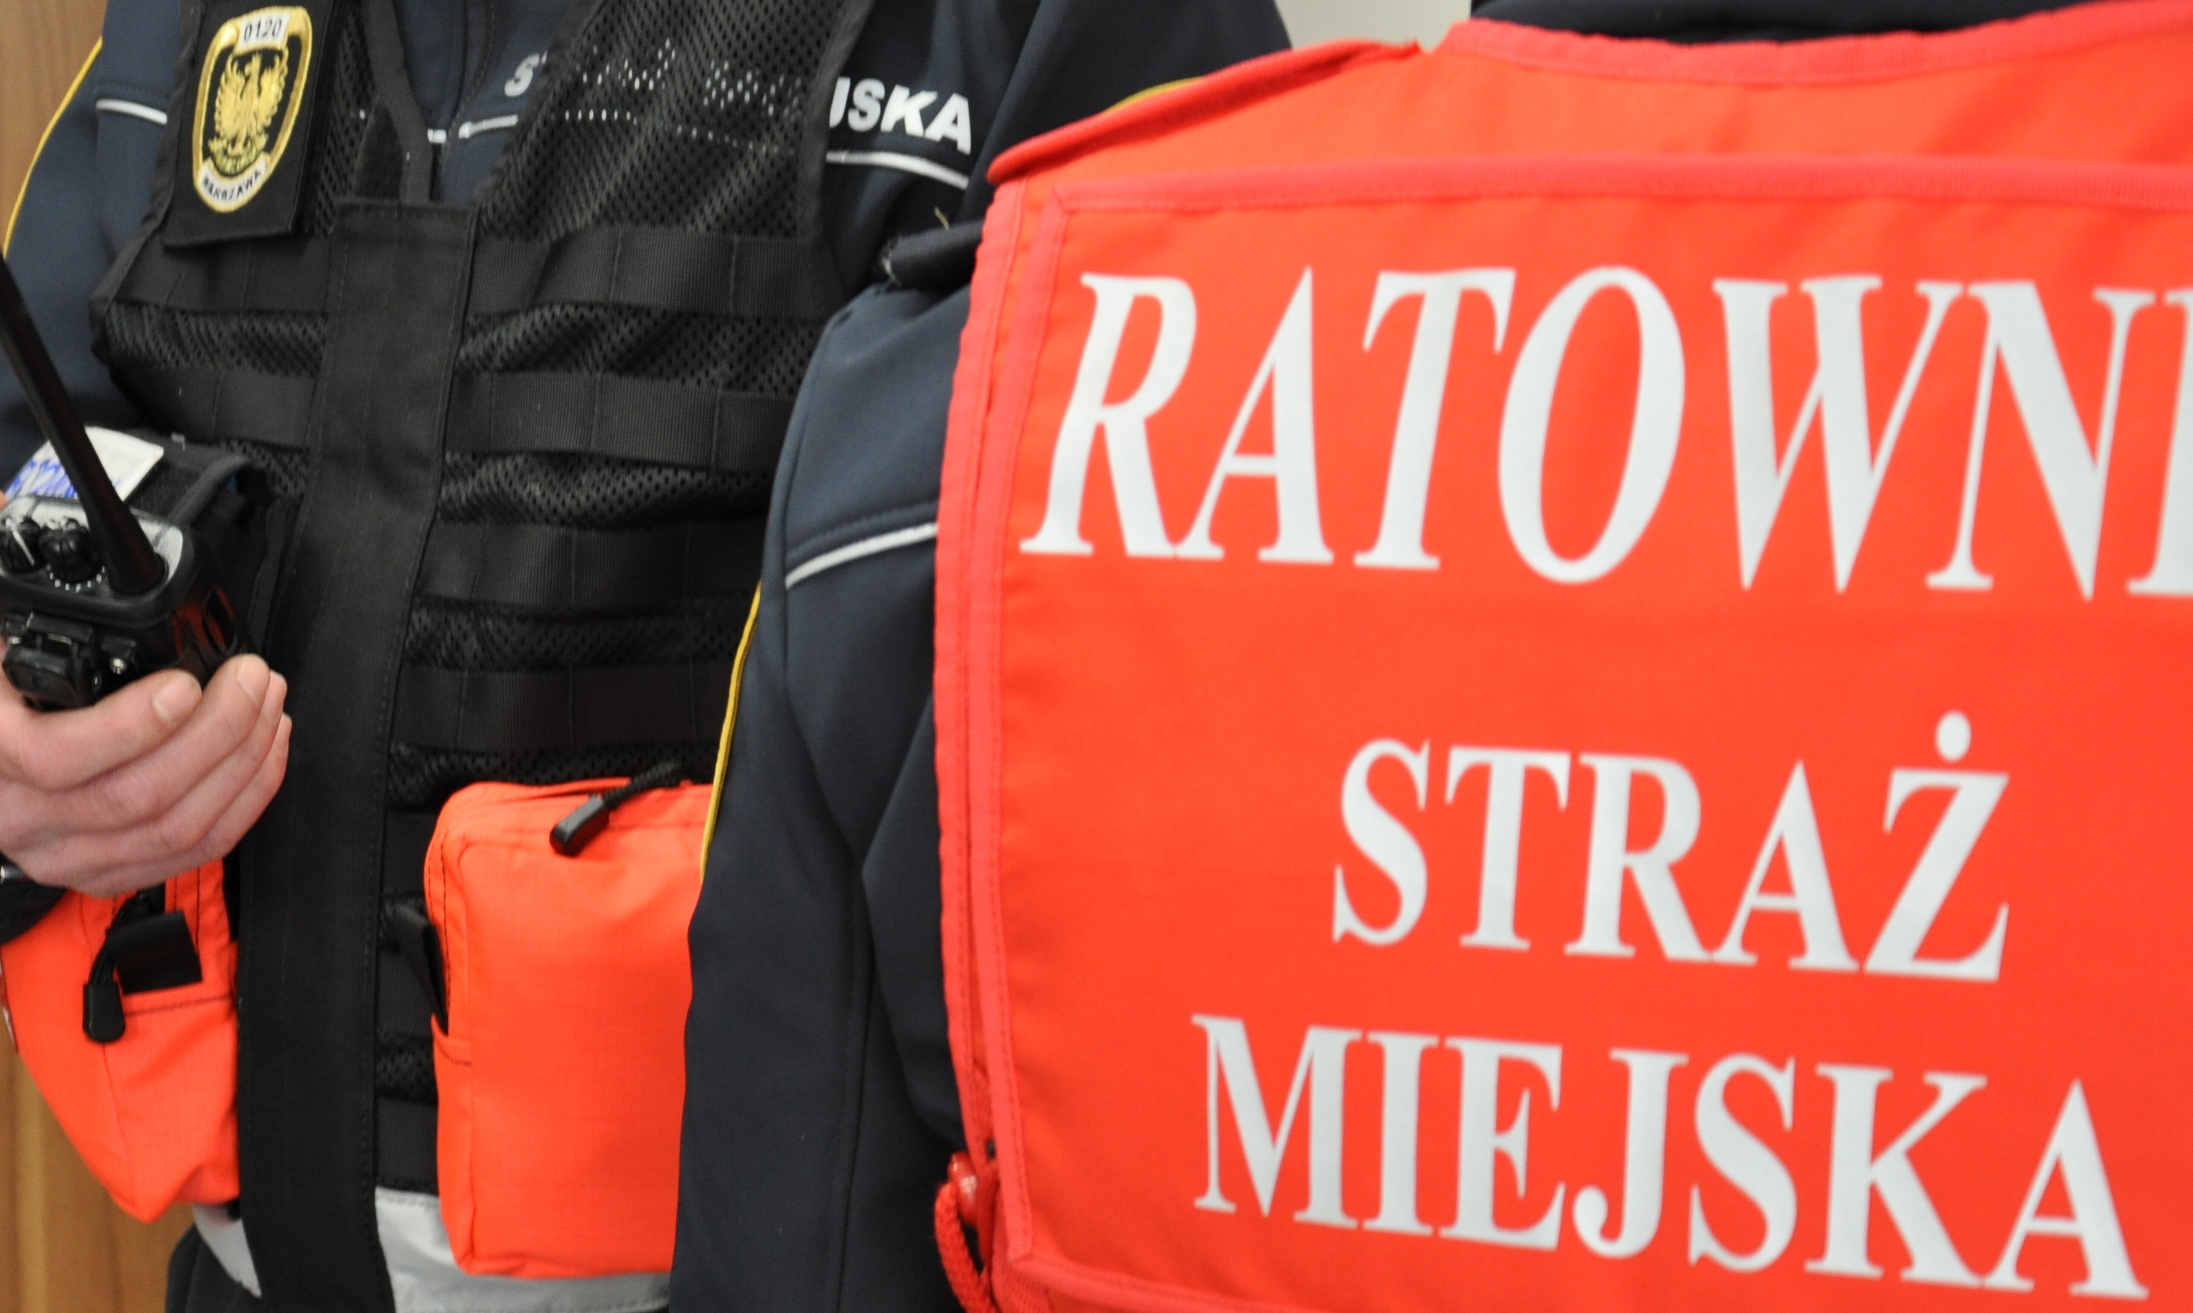 Strażnicy miejscy w kamizelkach z napisem "ratownik medyczny" - zdjęcie ilustracyjne